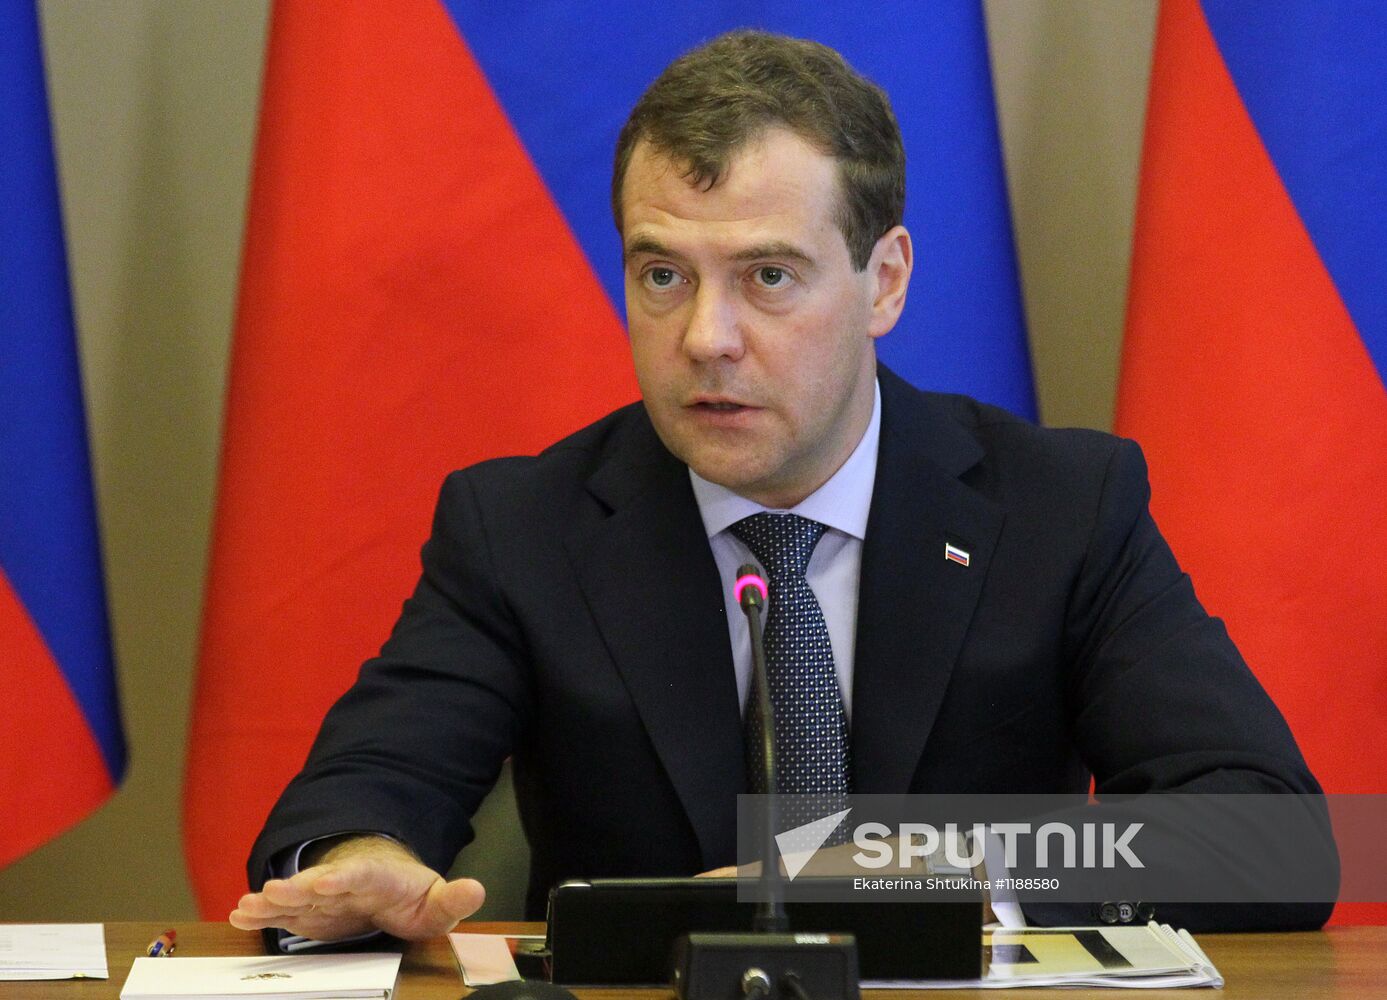 D.Medvedev's working visit to Kolomna